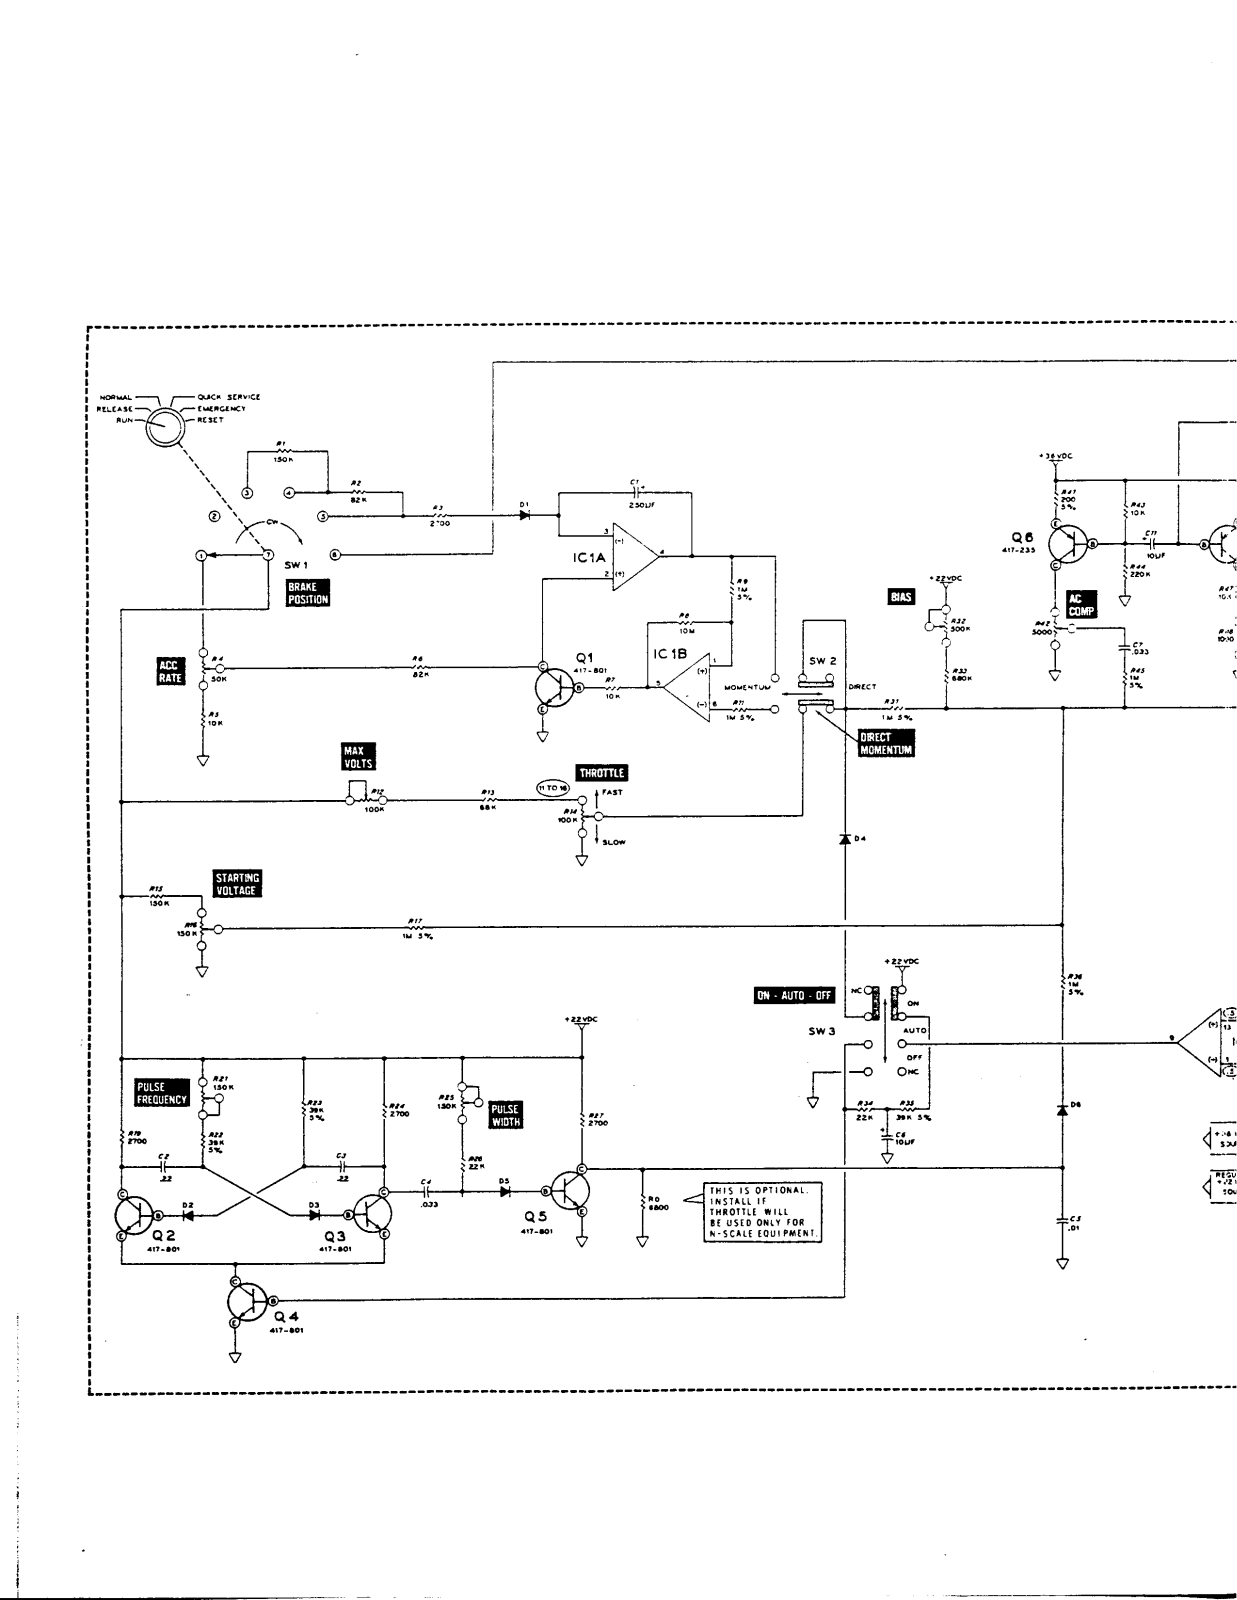 Heathkit rp 1065 schematic